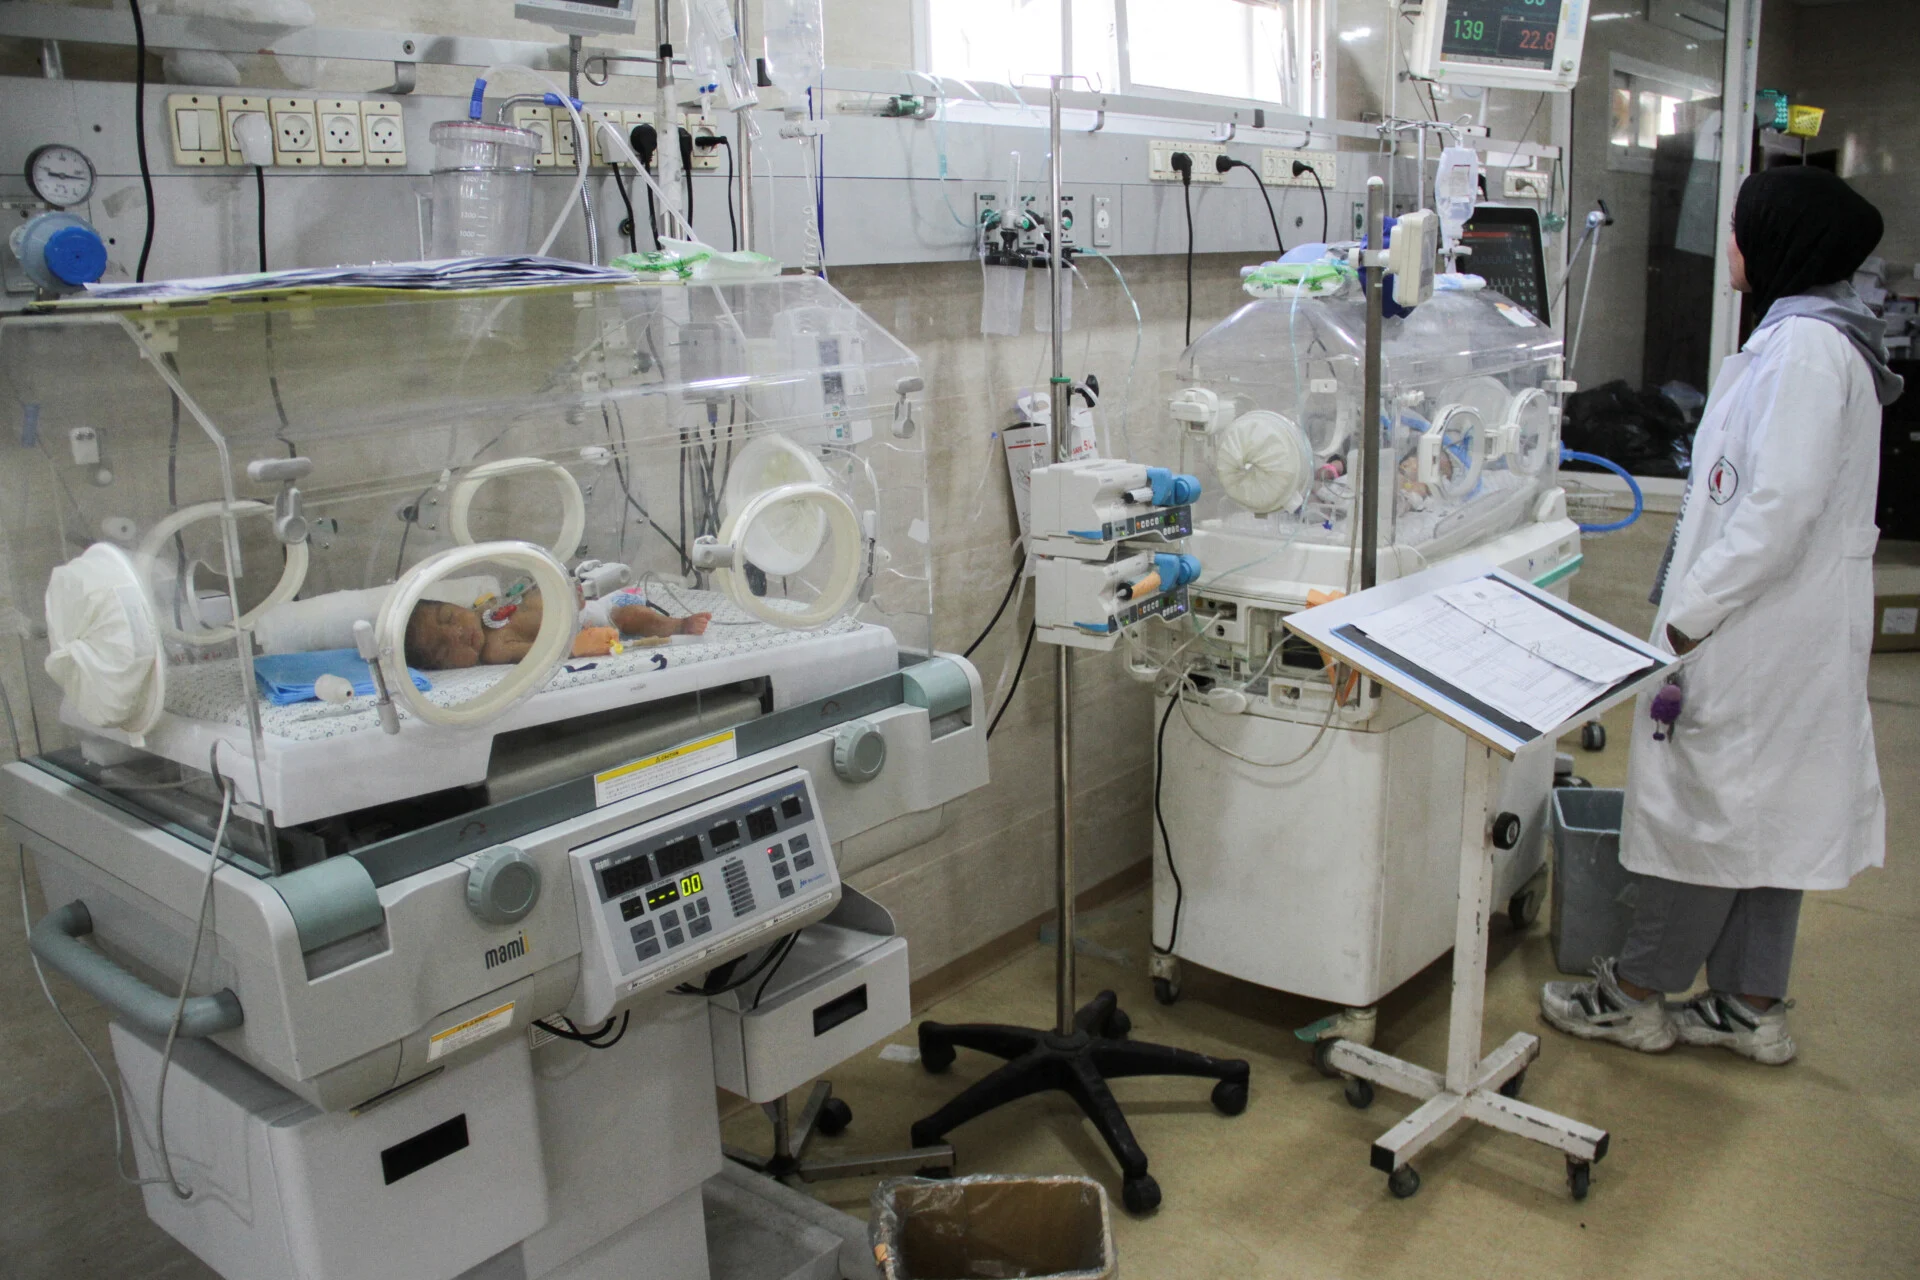 Ράφα: «Γεννήθηκε ορφανό» – Κοριτσάκι ήρθε στη ζωή με καισαρική μετά τον θάνατο της μητέρας του σε ισραηλινό πλήγμα